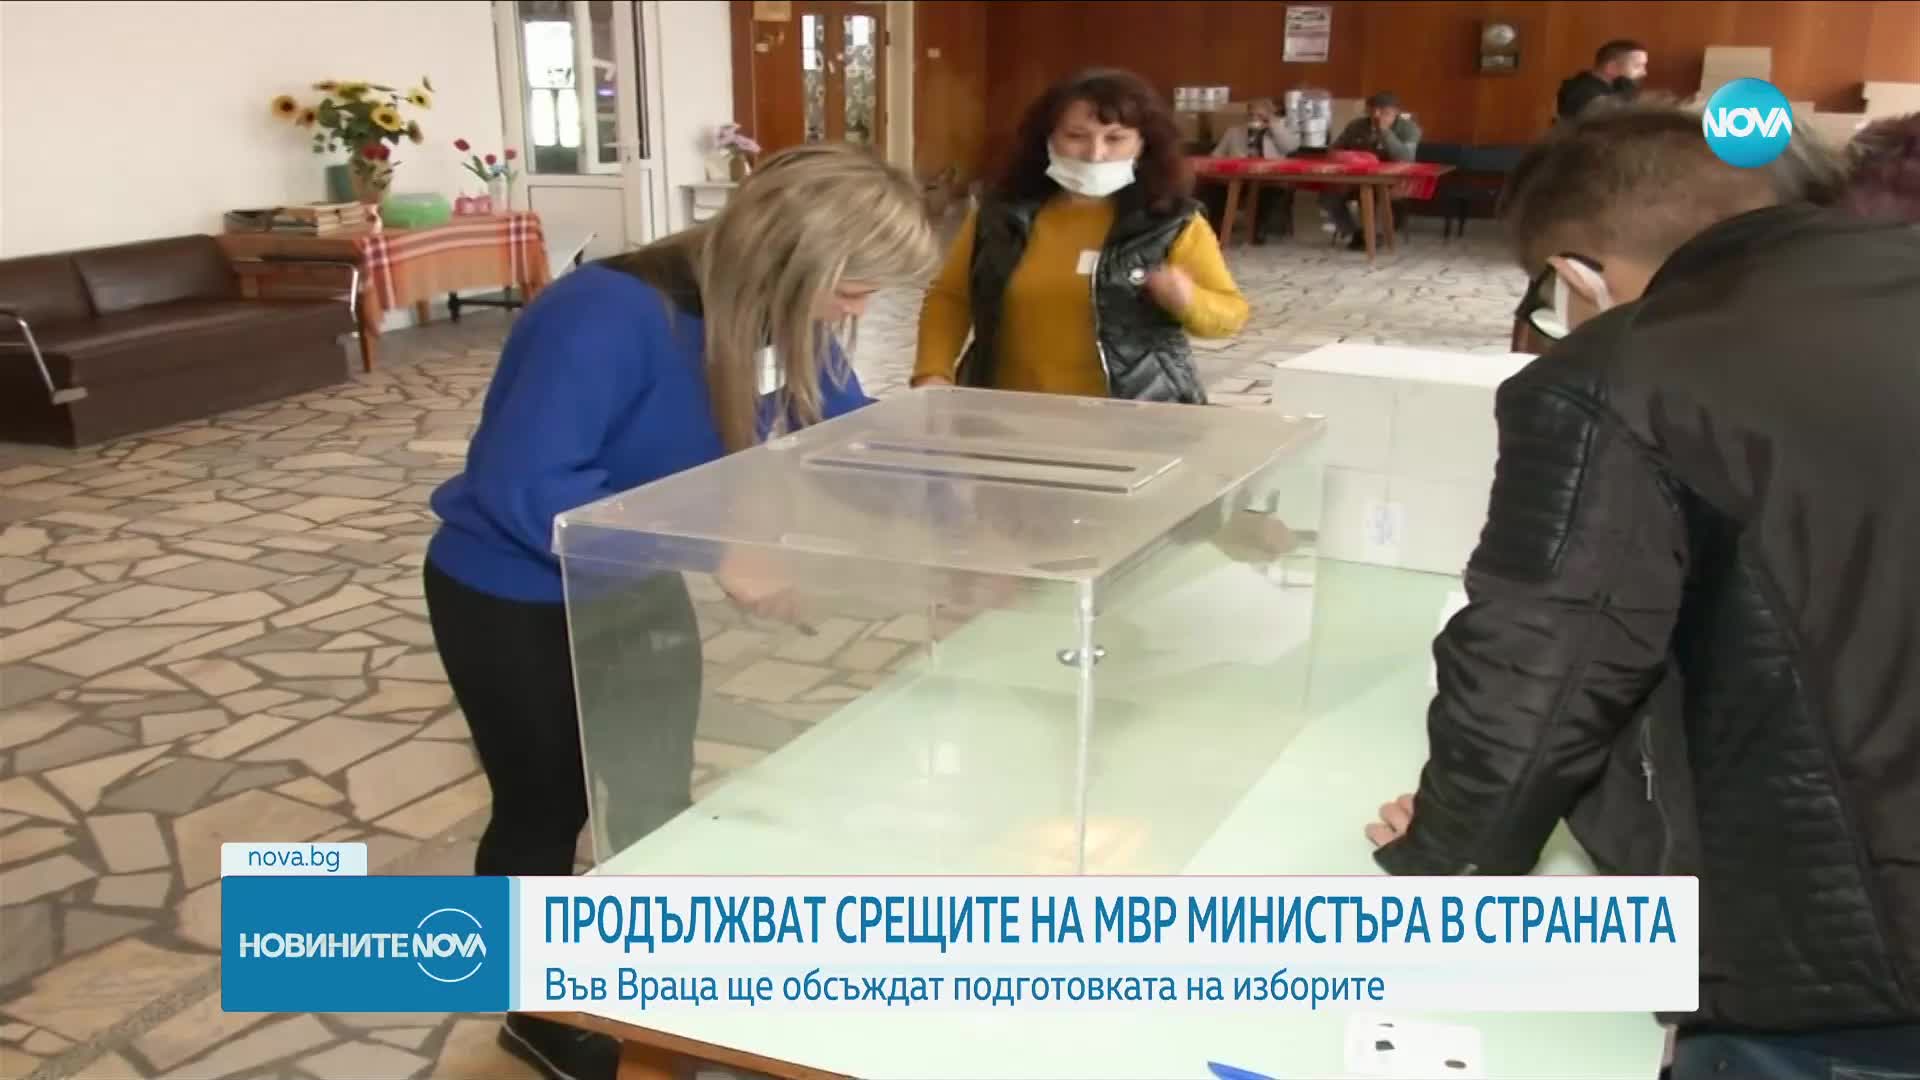 Демерджиев обсъжда във Враца подготовката на изборите